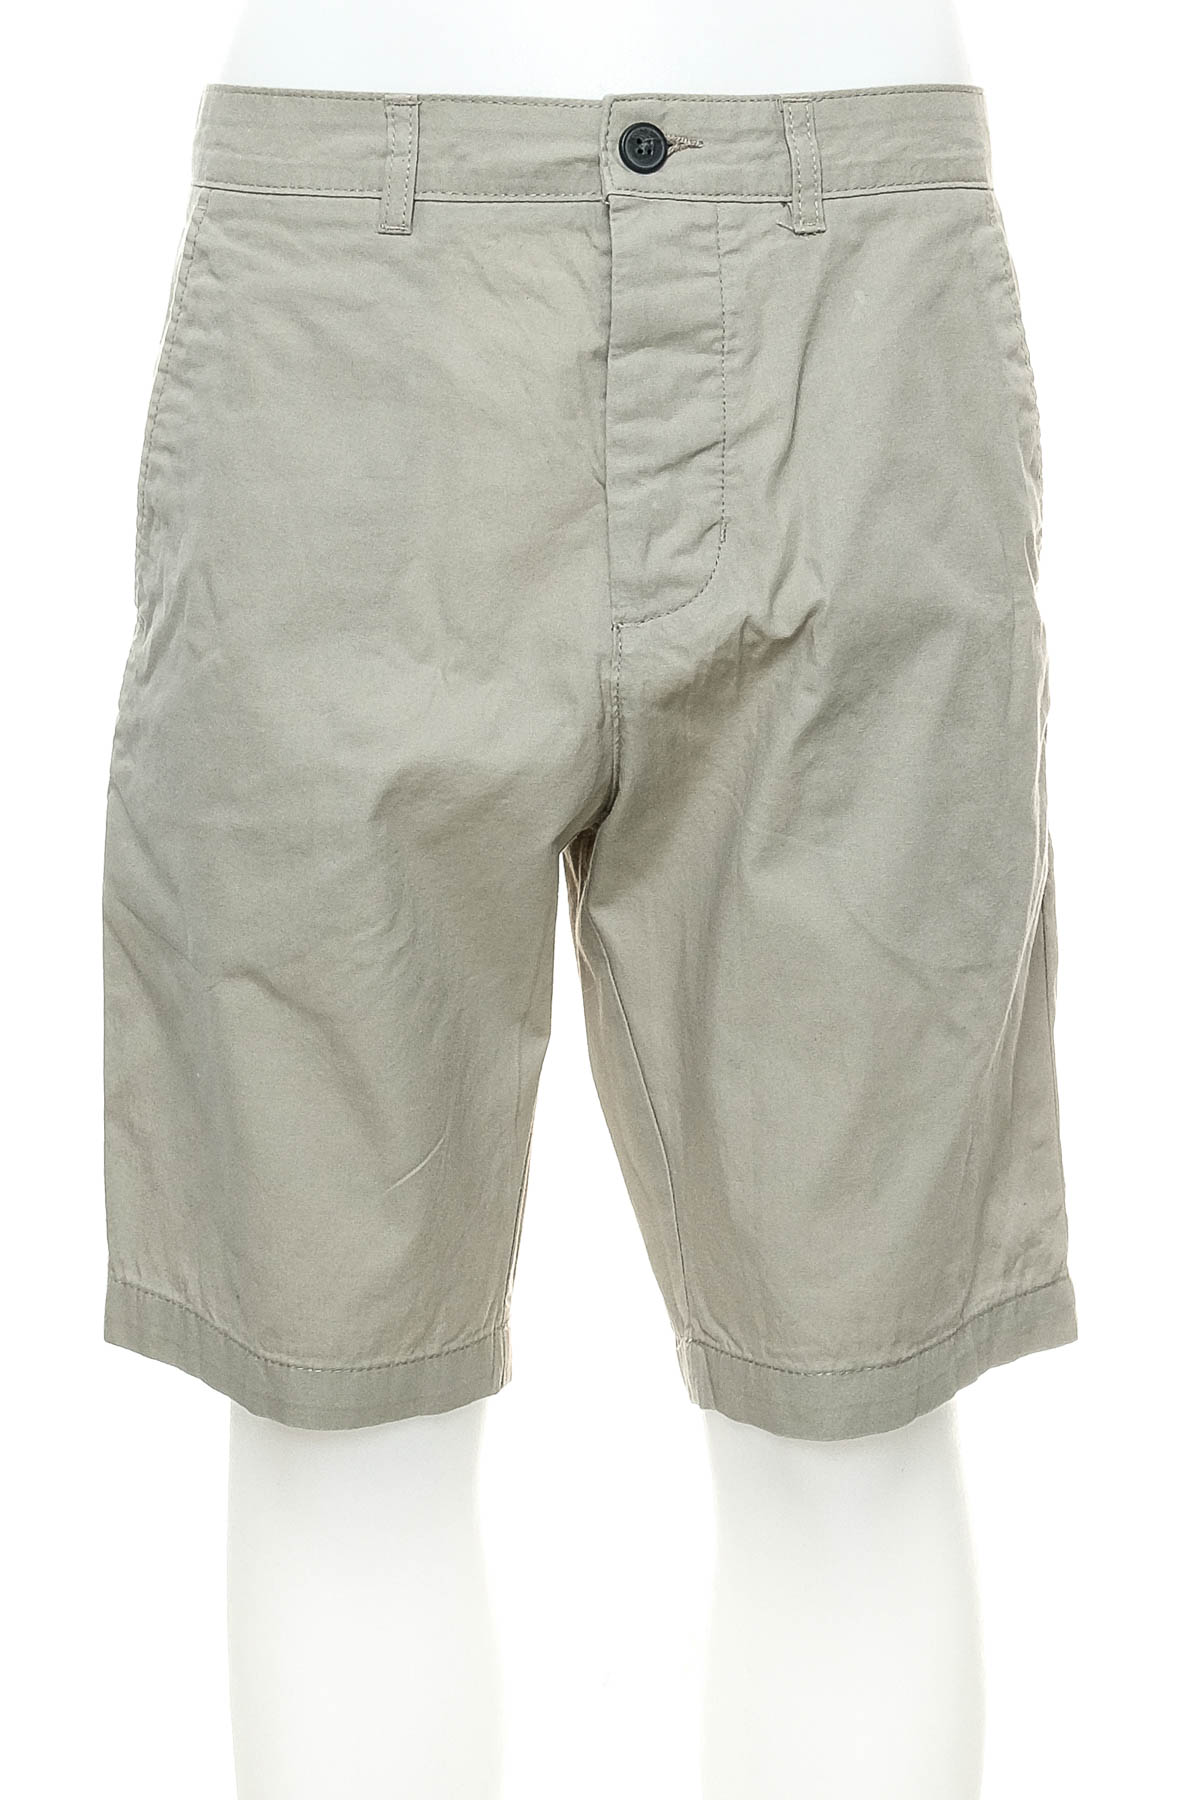 Pantaloni scurți bărbați - DIVIDED - 0